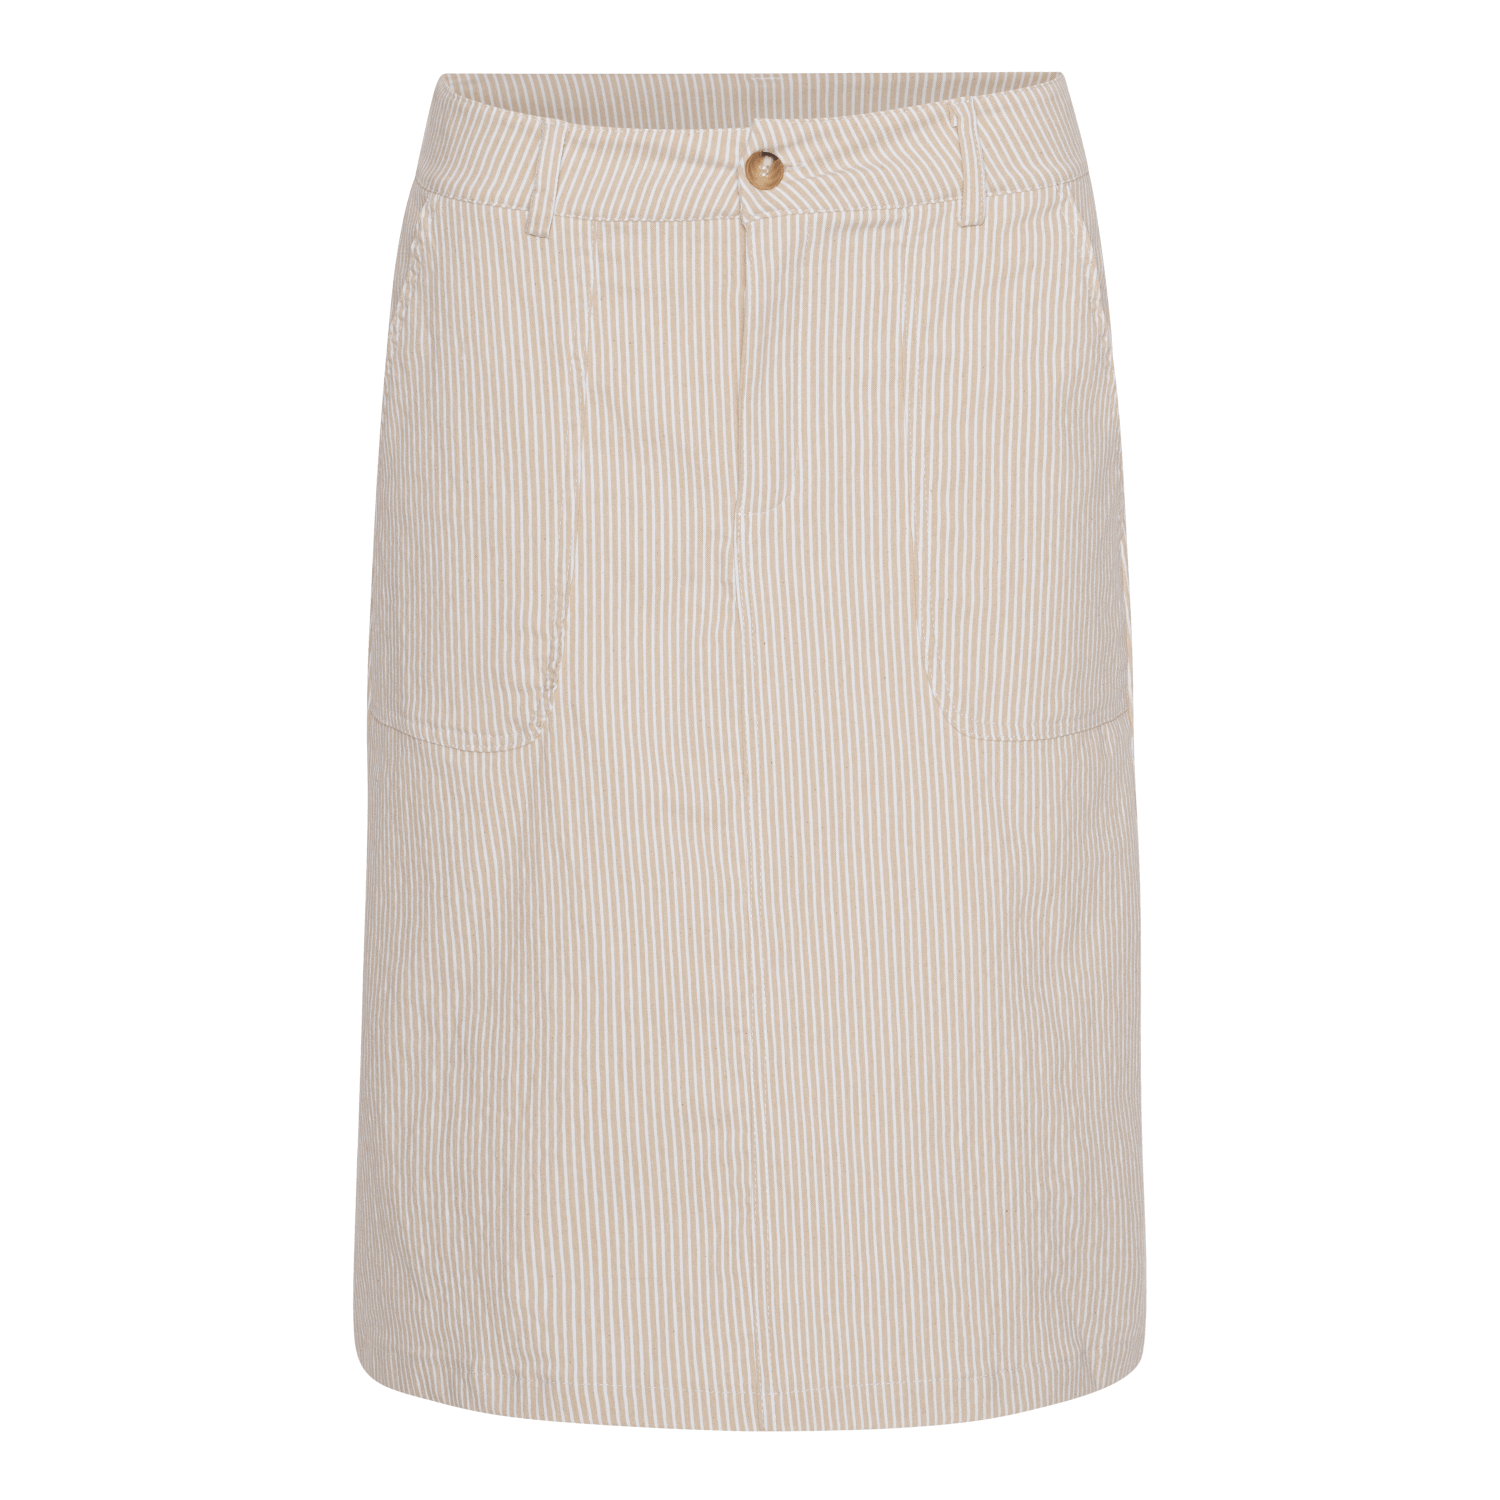 Pinstripe Skirt - Beige/White - Amaze Cph - Beige/White - S